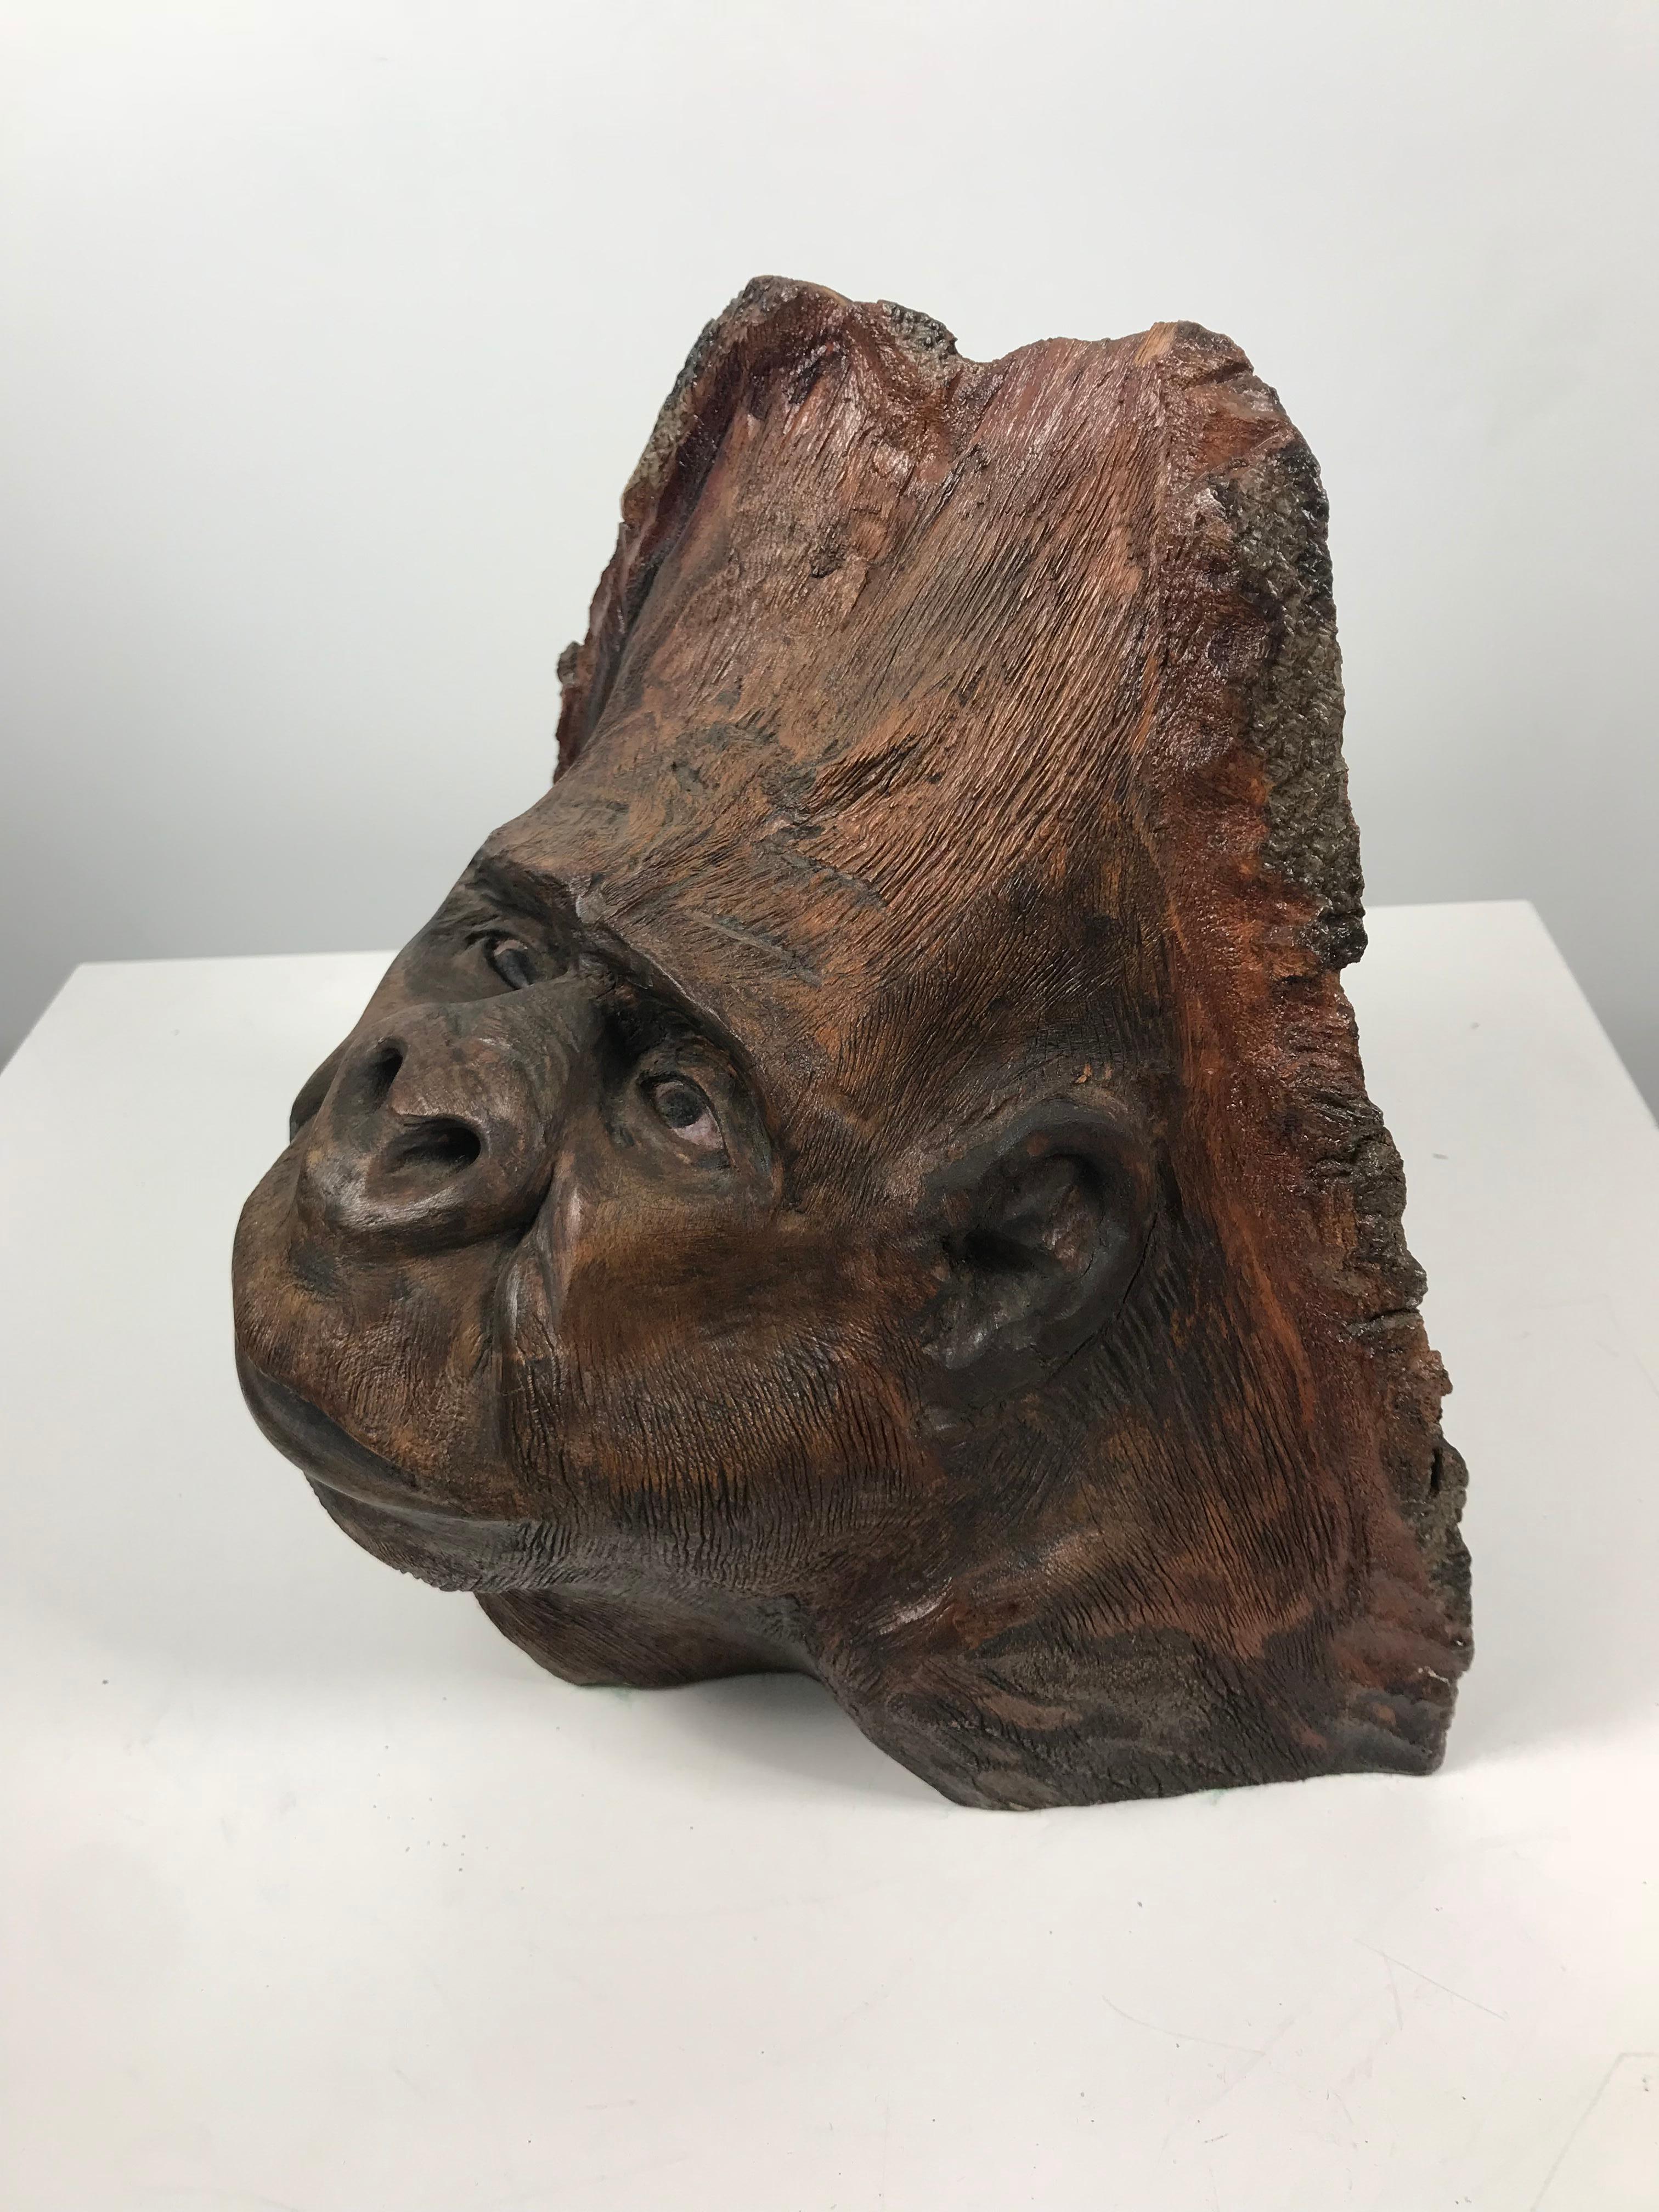 Ungewöhnliche Hand geschnitzt aus Ast eines Baumes, Folk Art Skulptur, die ein Gorilla-Gesicht, Kopf, erstaunlich lebensechte Bild, extrem gut ausgeführt.